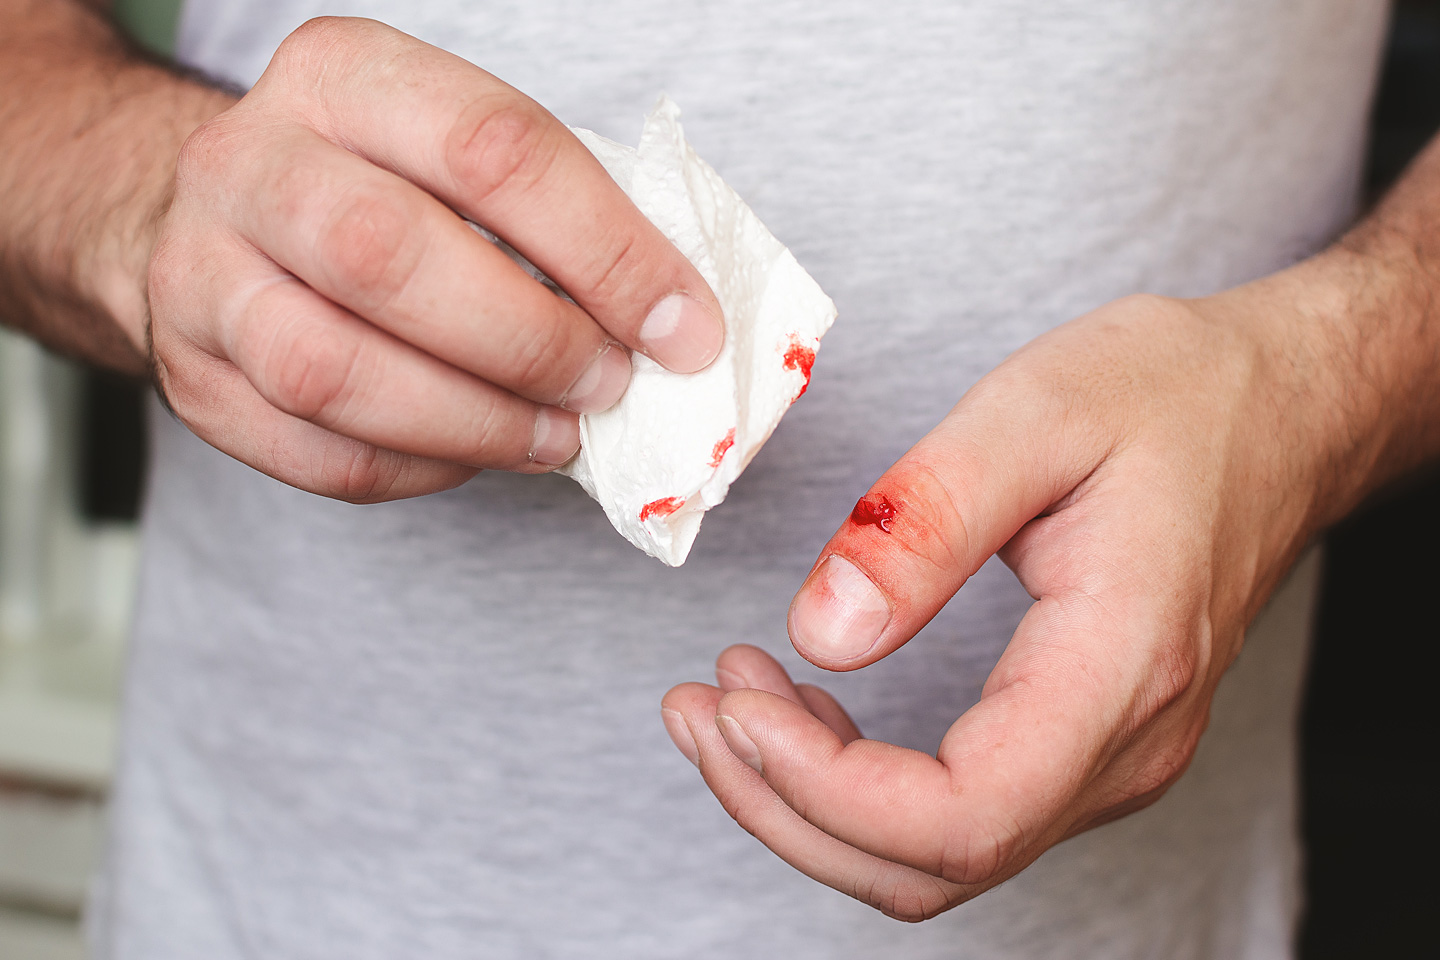 Mann mit Schnitt am Finger muss wegen Blutvergiftung in Behandlung.